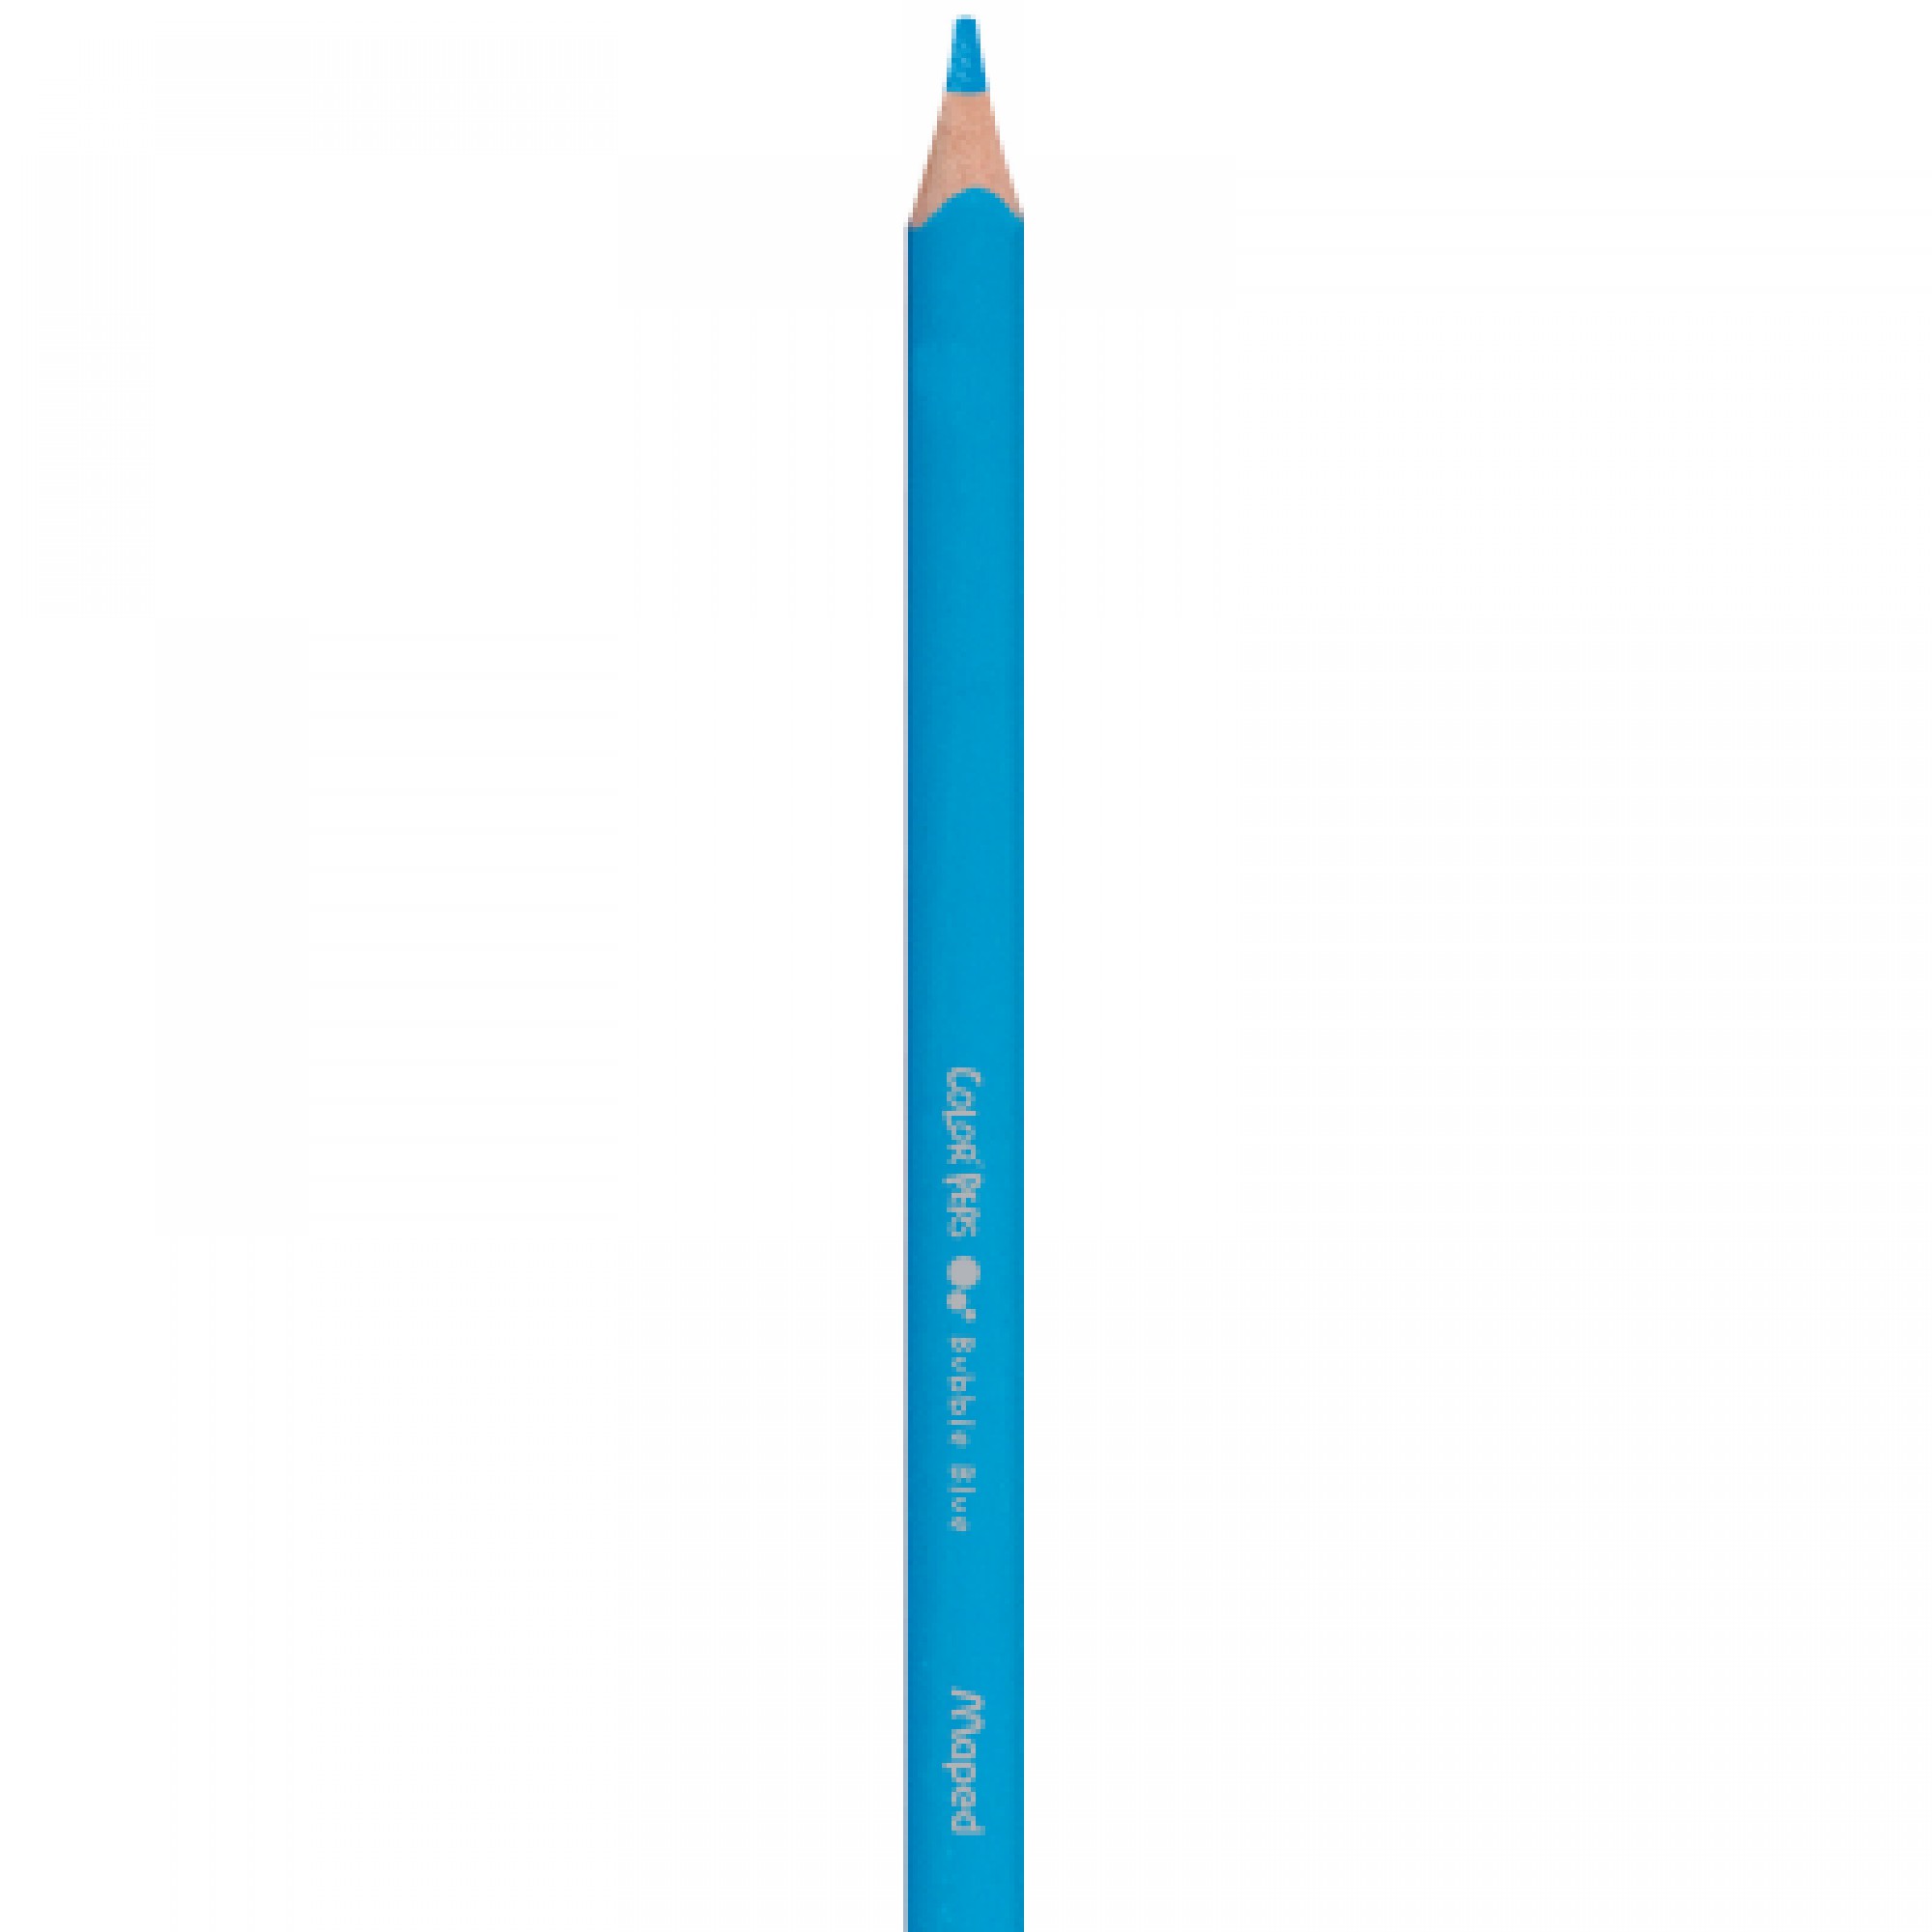 Олівці кольорові ZiBi Color Peps Maxi 12 кол. (MP.834010)